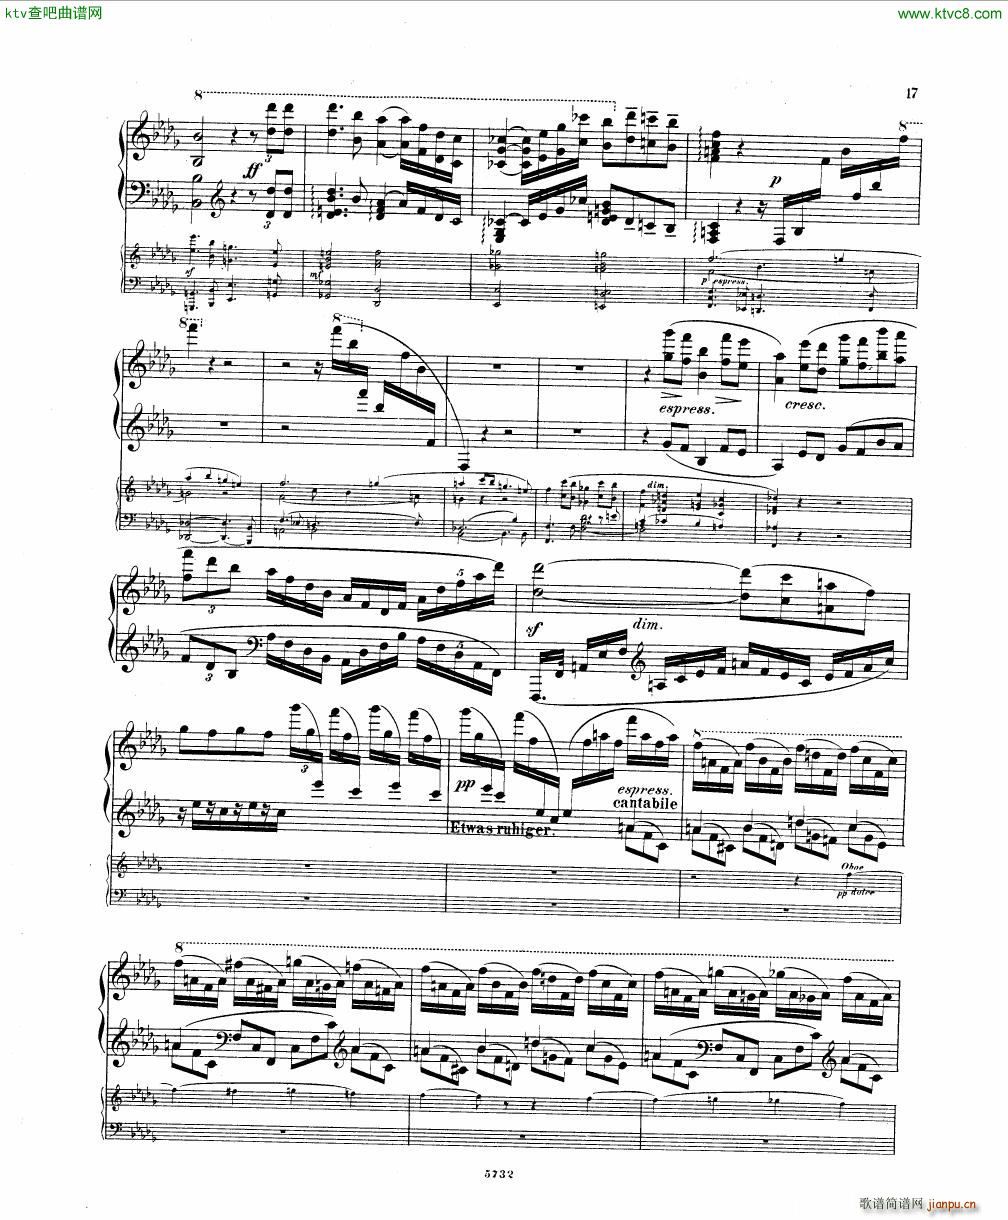 Fuchs Piano concerto Op 27 I()15